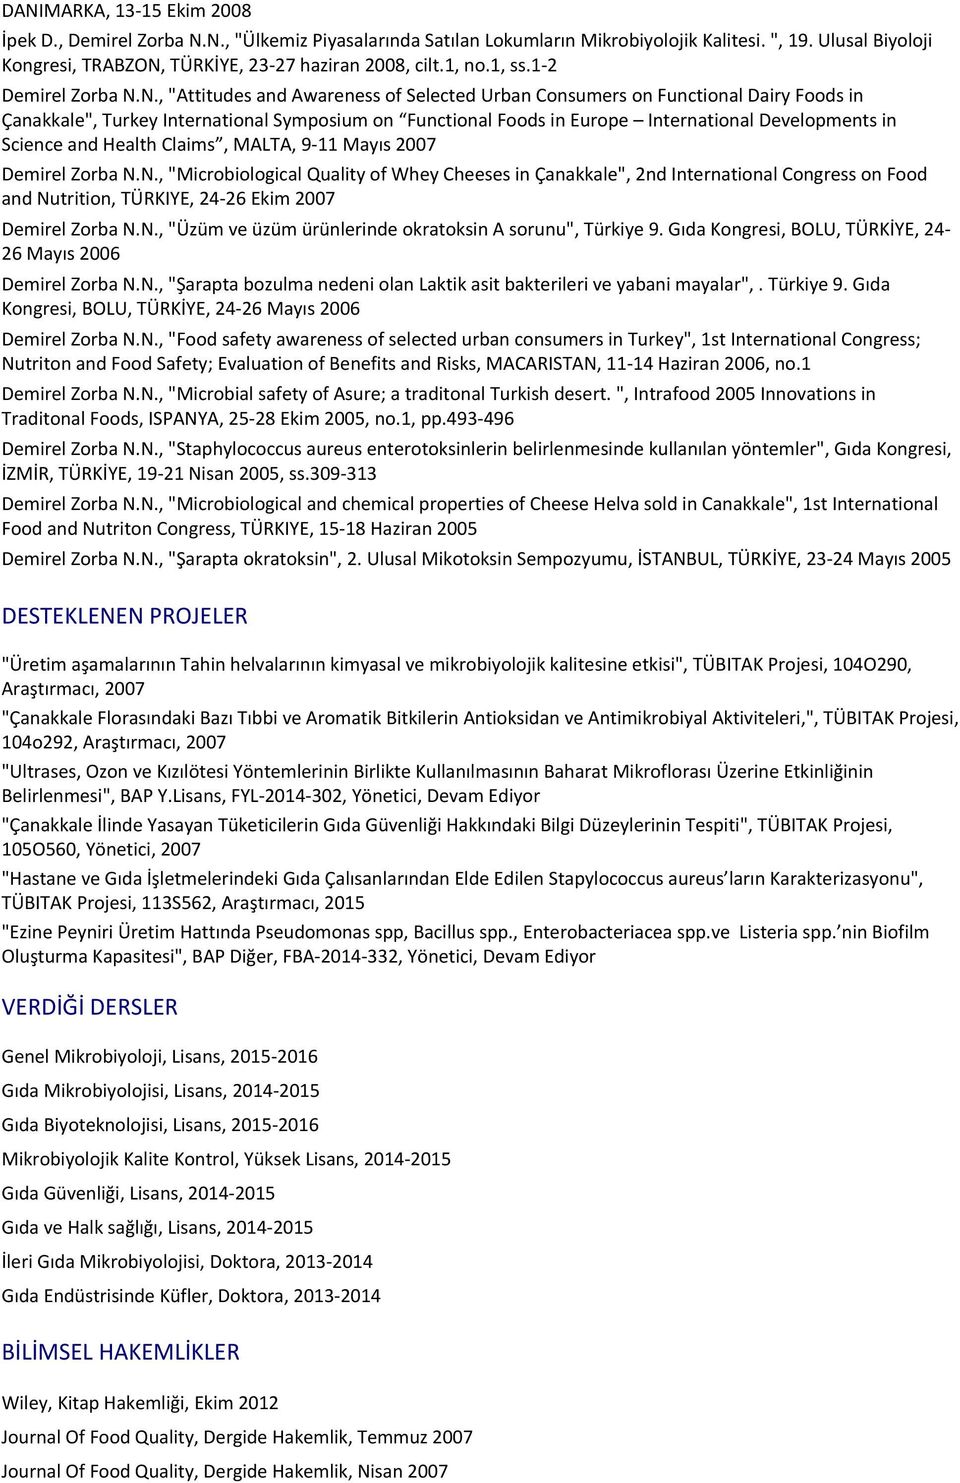 DANIMARKA, 13-15 Ekim 2008 İpek D., N., "Ülkemiz Piyasalarında Satılan Lokumların Mikrobiyolojik Kalitesi. ", 19. Ulusal Biyoloji Kongresi, TRABZON, TÜRKİYE, 23-27 haziran 2008, cilt.1, no.1, ss.